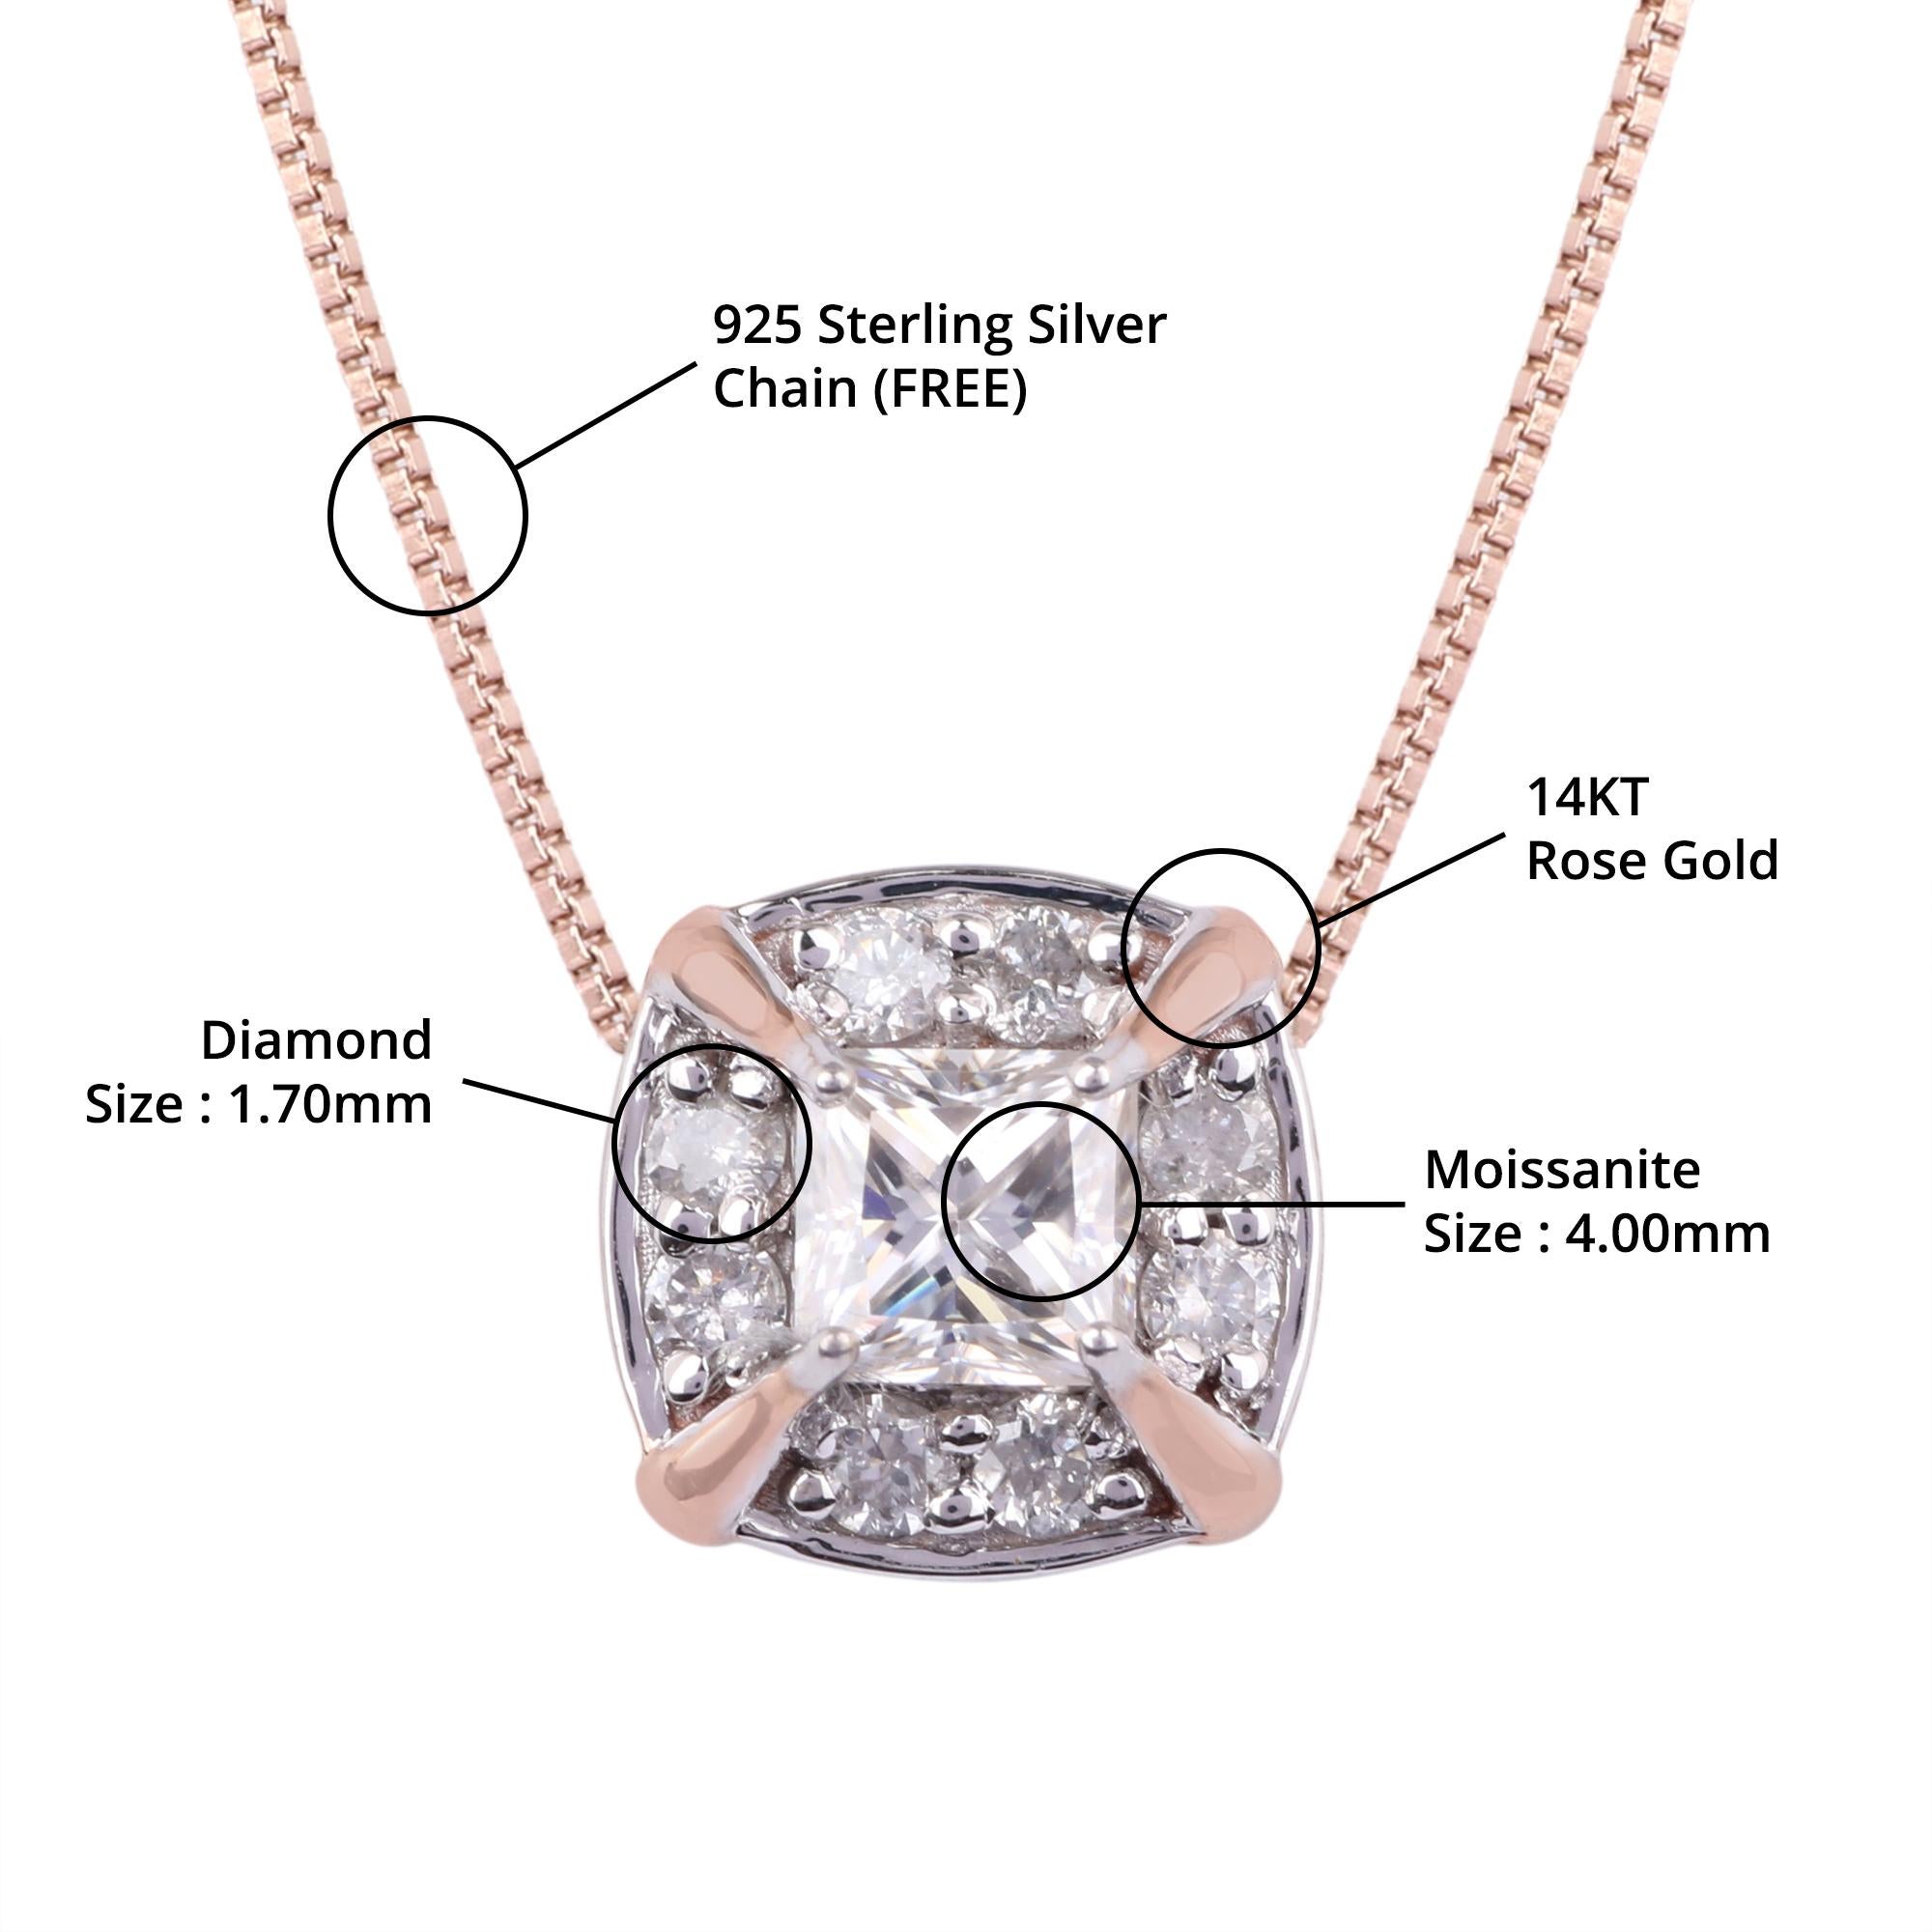 Einzelheiten zum Artikel:-

✦ SKU:- JPD00186RRR

✦ Material :- Gold

✦ Metallreinheit : 14K Rose Gold

✦ Edelstein-Spezifikation:- 
✧ Klarer Diamant rund (l1/H1) - 1,70 mm - 8 Stück
✧ Klarer Moissanit rund (VVS/DE) - 4 mm - 1 Stk


✦ Ungefähr.